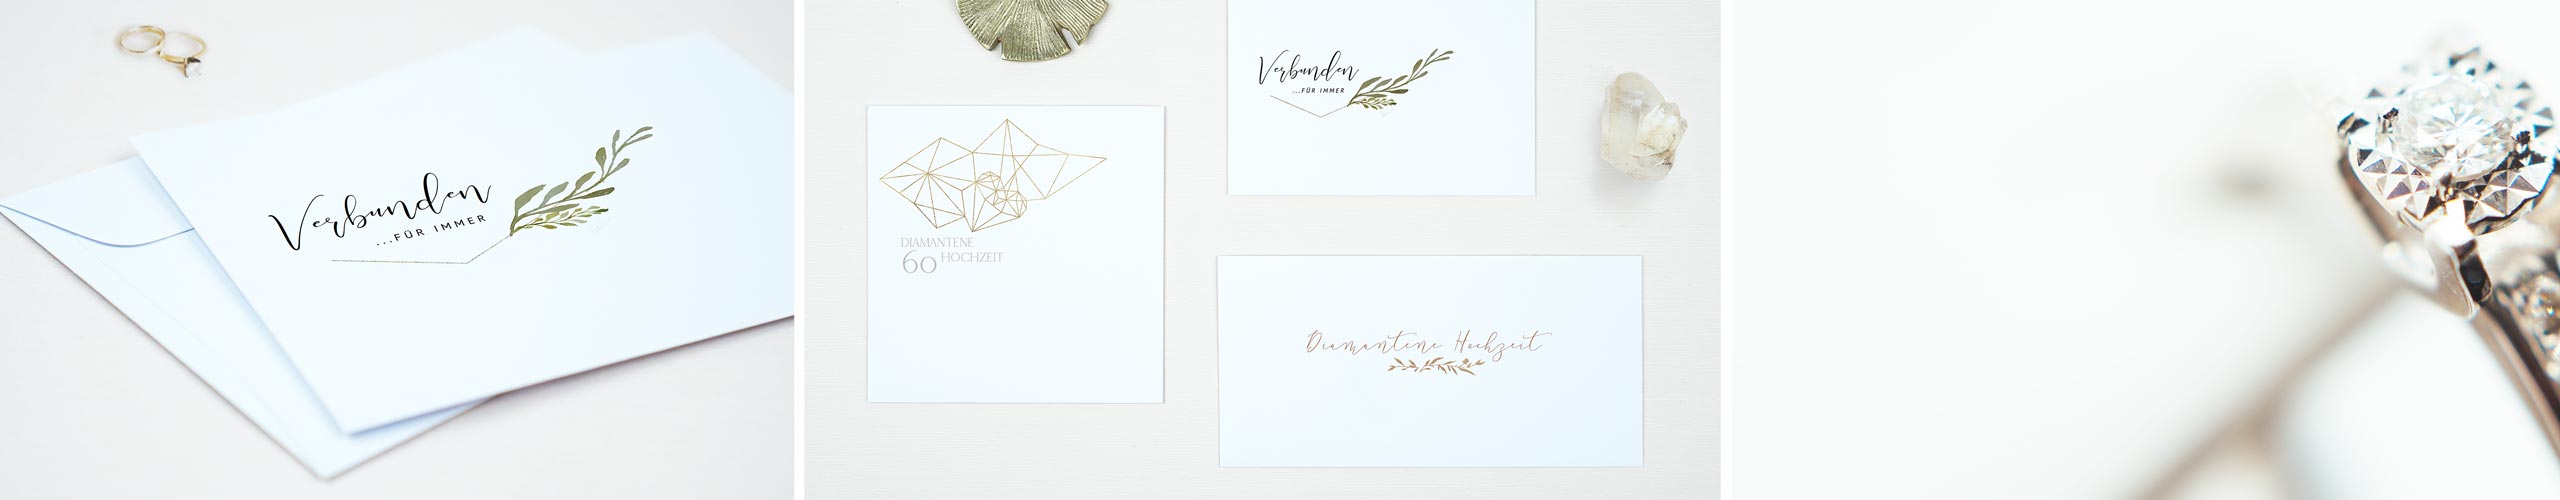 Zur Diamantenen Hochzeit Umschläge mit Design